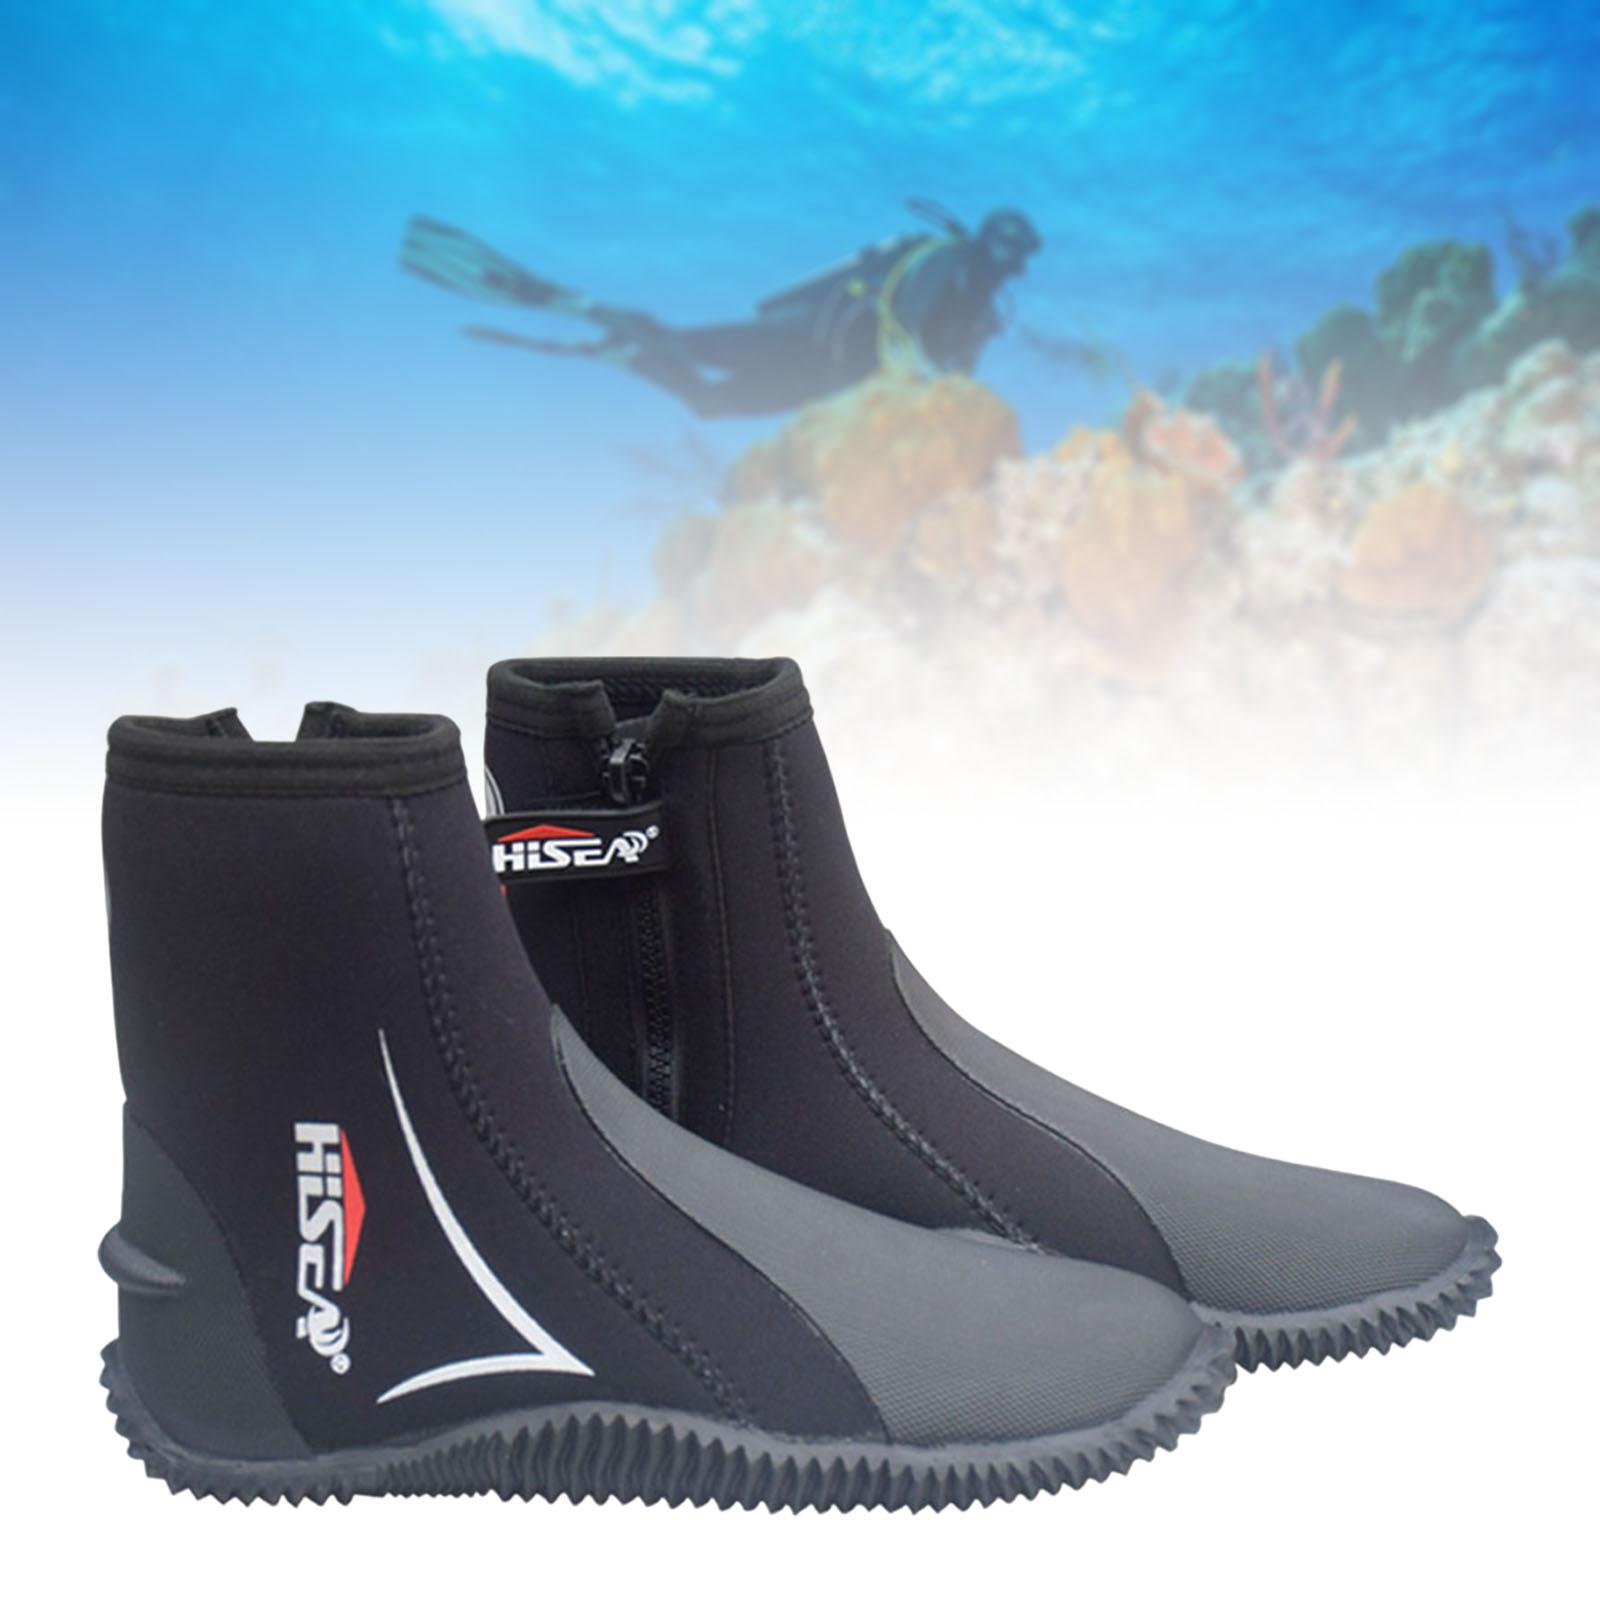 Scuba Diving Booties Neoprene Water Sports Wetsuit Boots Black 42 26-26.5